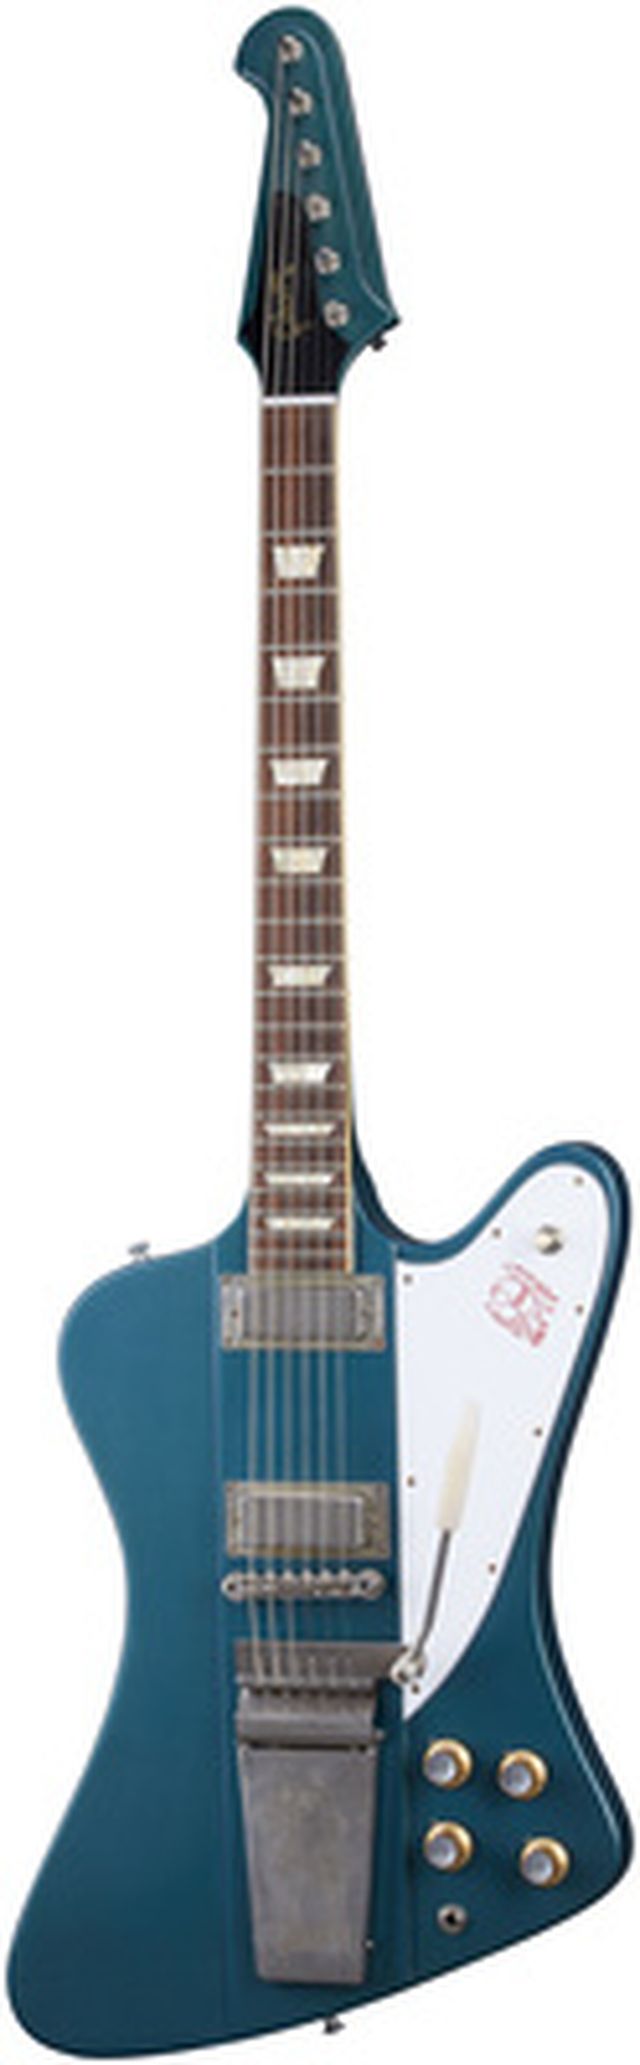 Gibson 1963 Firebird V Reissue PB ULA